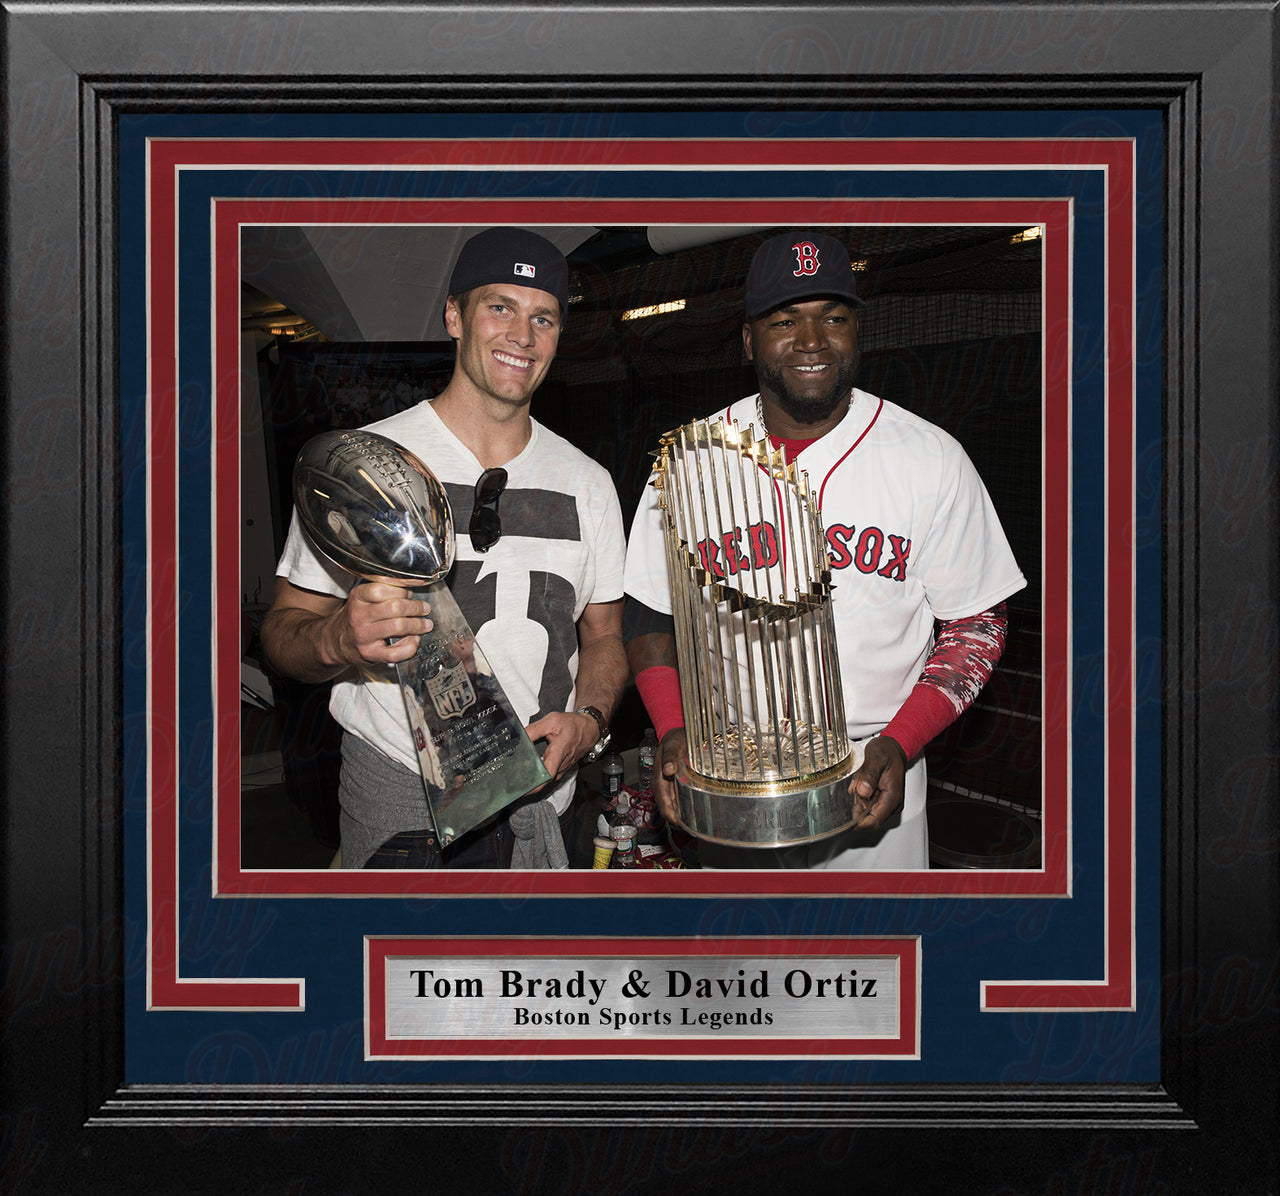 Tom Brady & David Ortiz 8" x 10" Framed Championship Trophy Photo - Dynasty Sports & Framing 